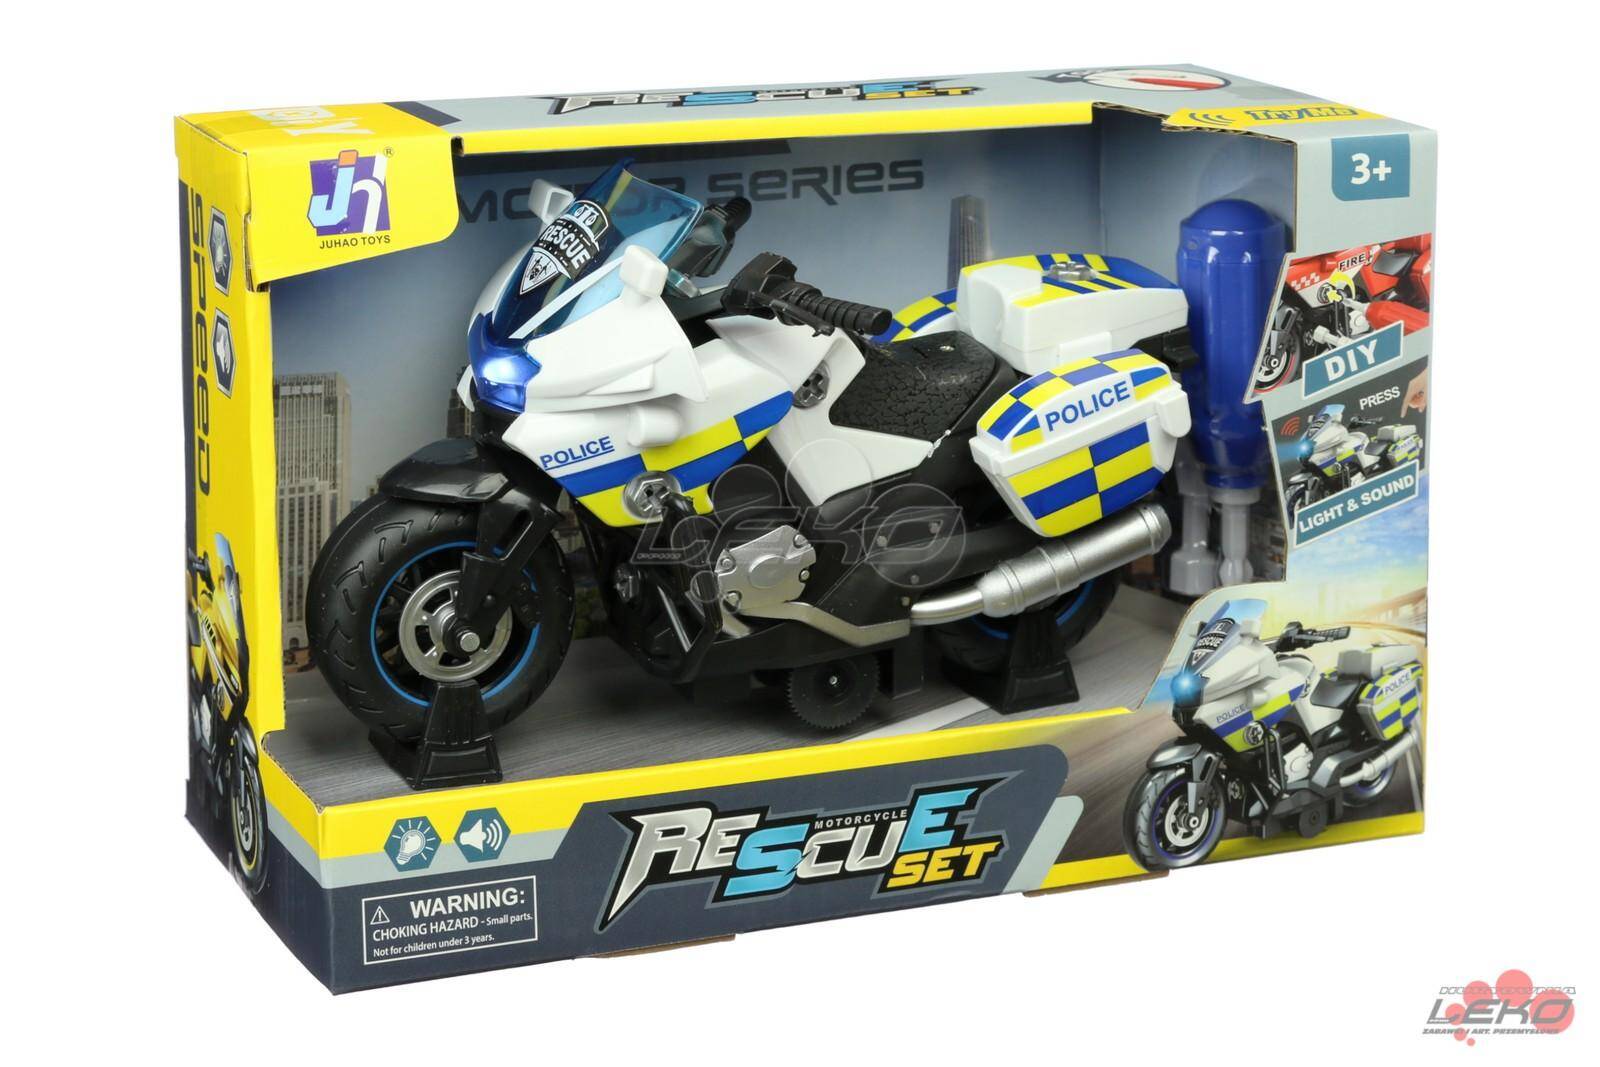 Motocykl POLICE 22cm do skręcania